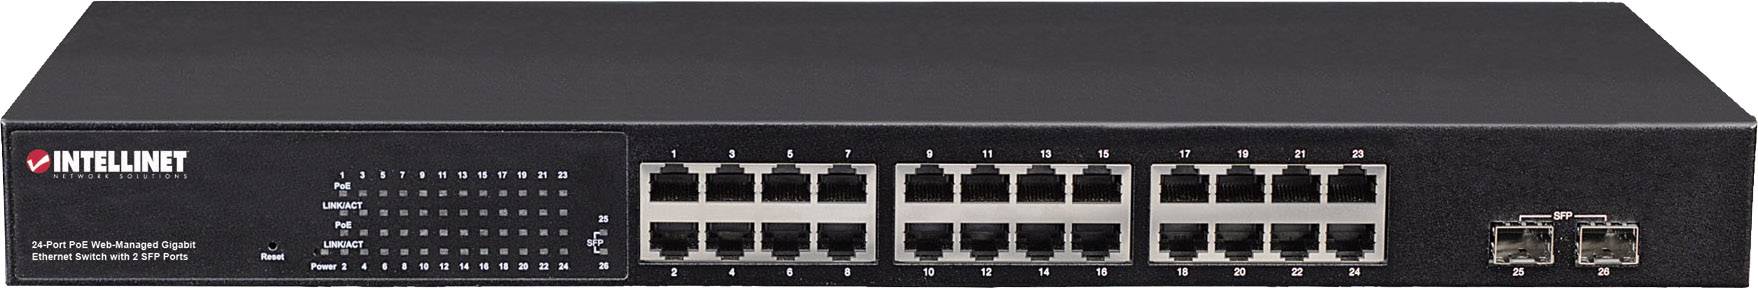 Intellinet 24-Port PoE Web-Managed Gigabit Ethernet Swith